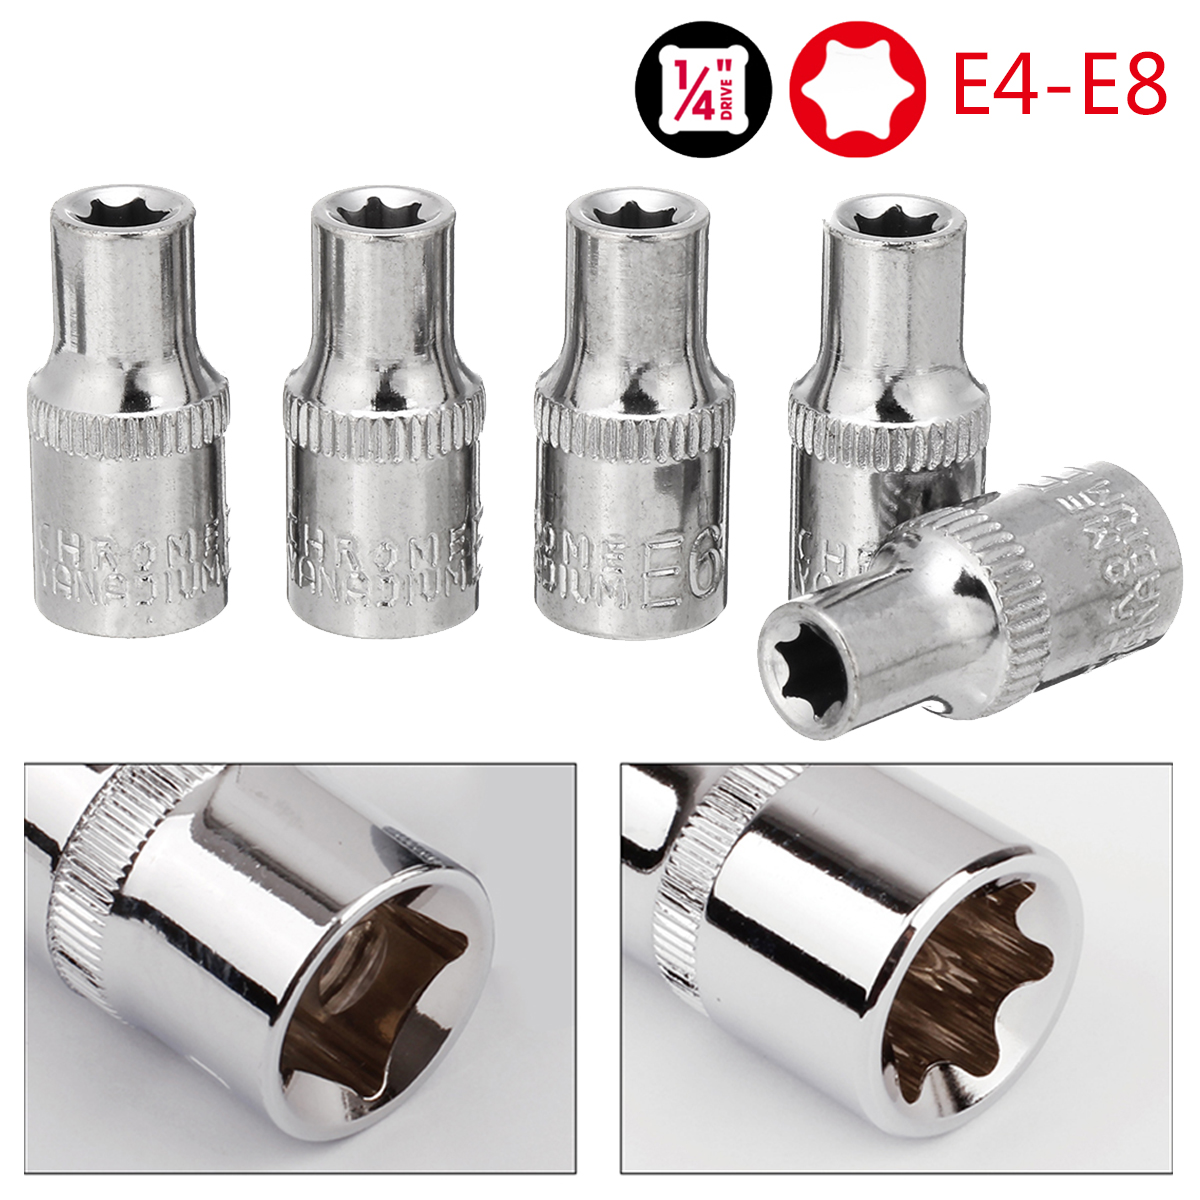 5PCS-Socket-Wrench-Kit-14-Inch-Drive-Auto-Repair-Sleeve-Set-E4-E8-E-type-Post-Socket-1558227-3